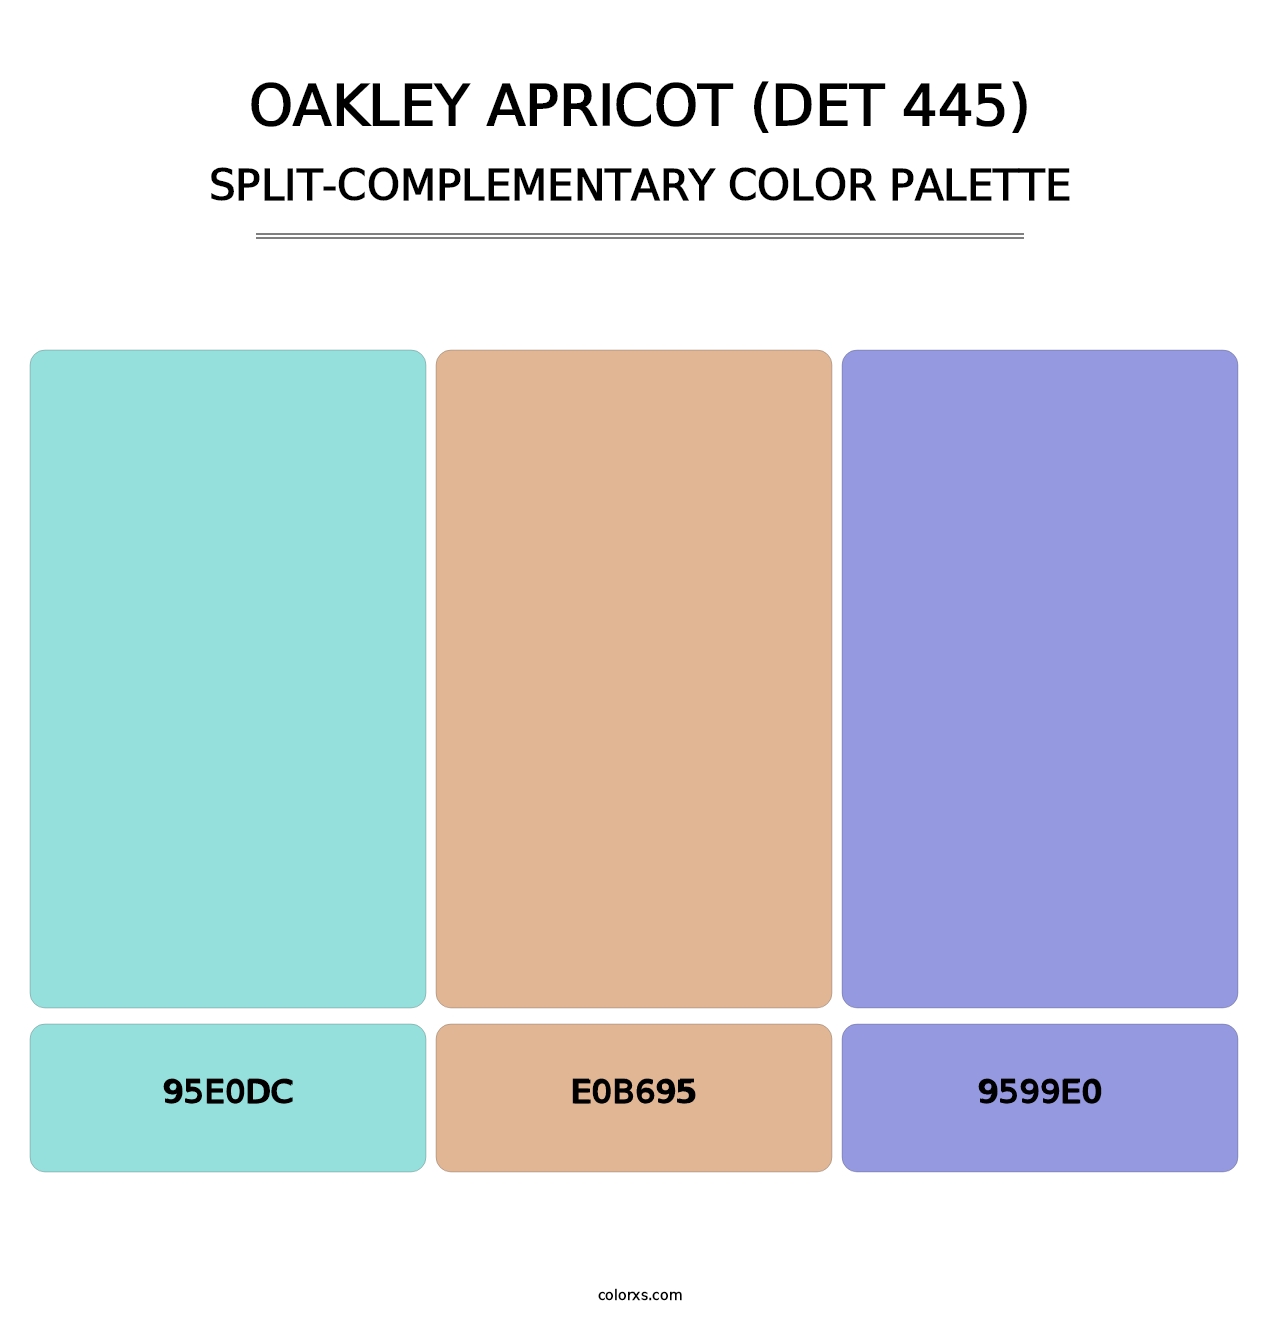 Oakley Apricot (DET 445) - Split-Complementary Color Palette